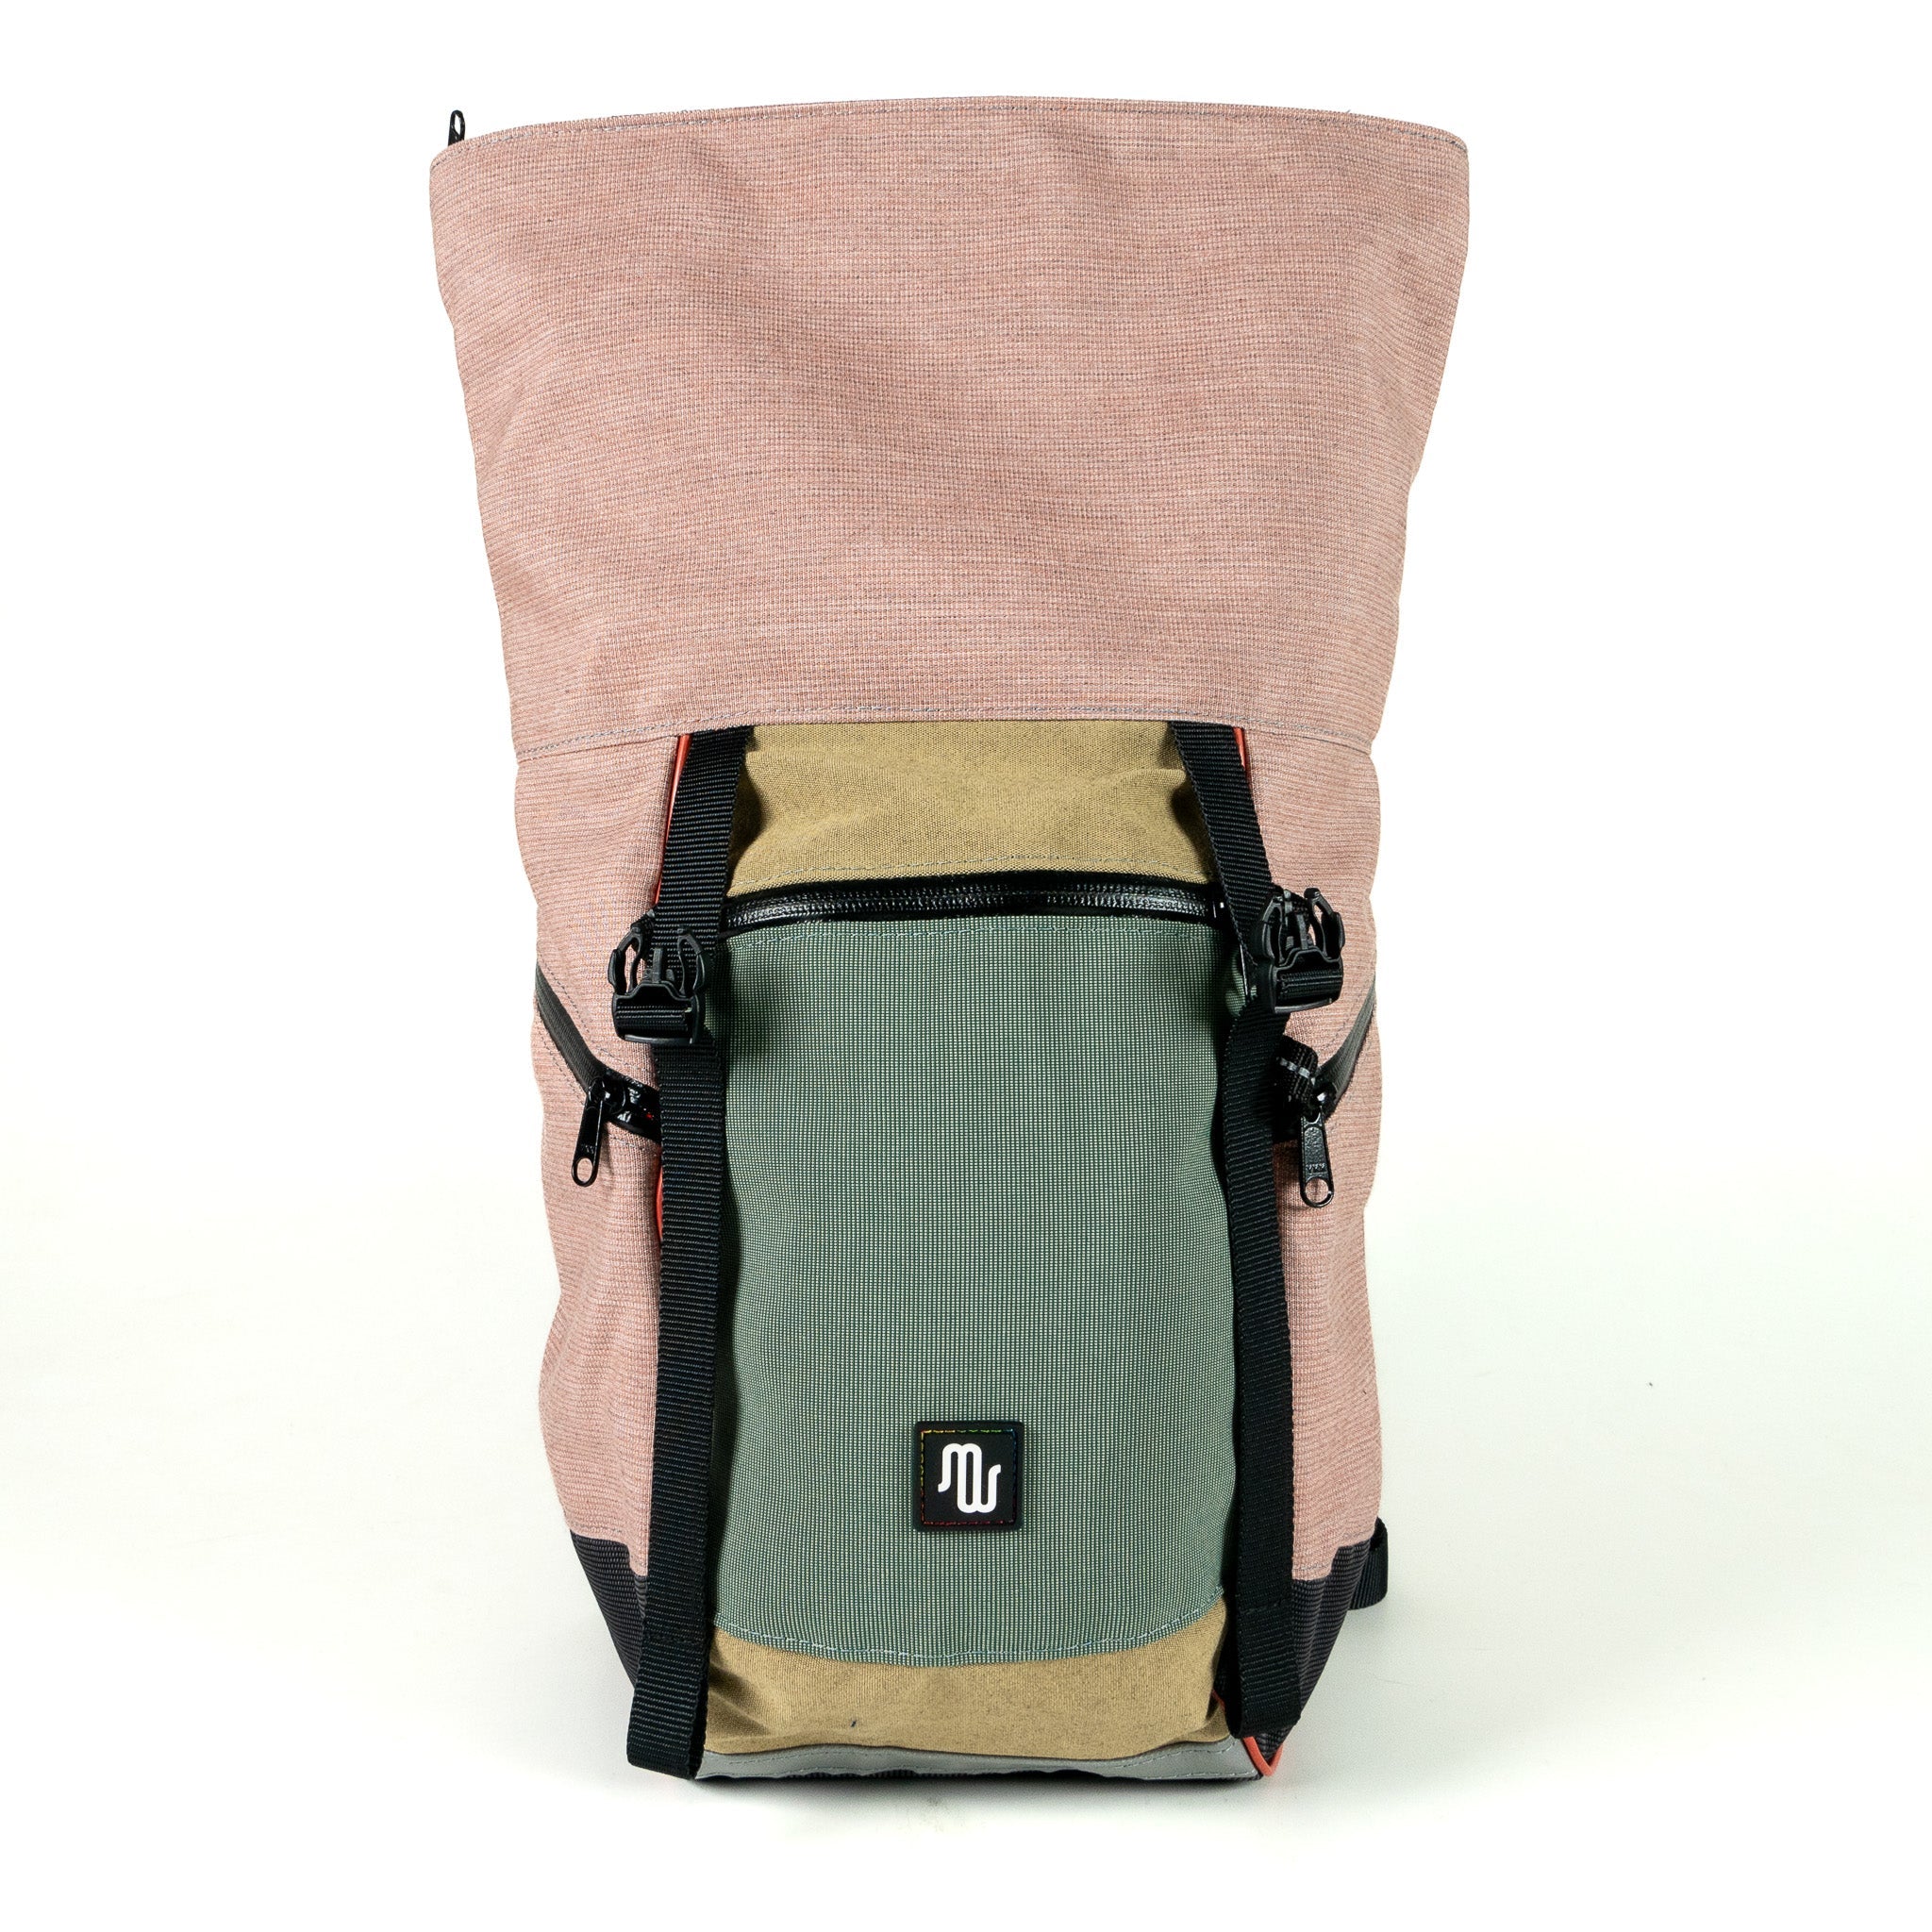 BUDDY No. 121 - Backpacks - medencebag